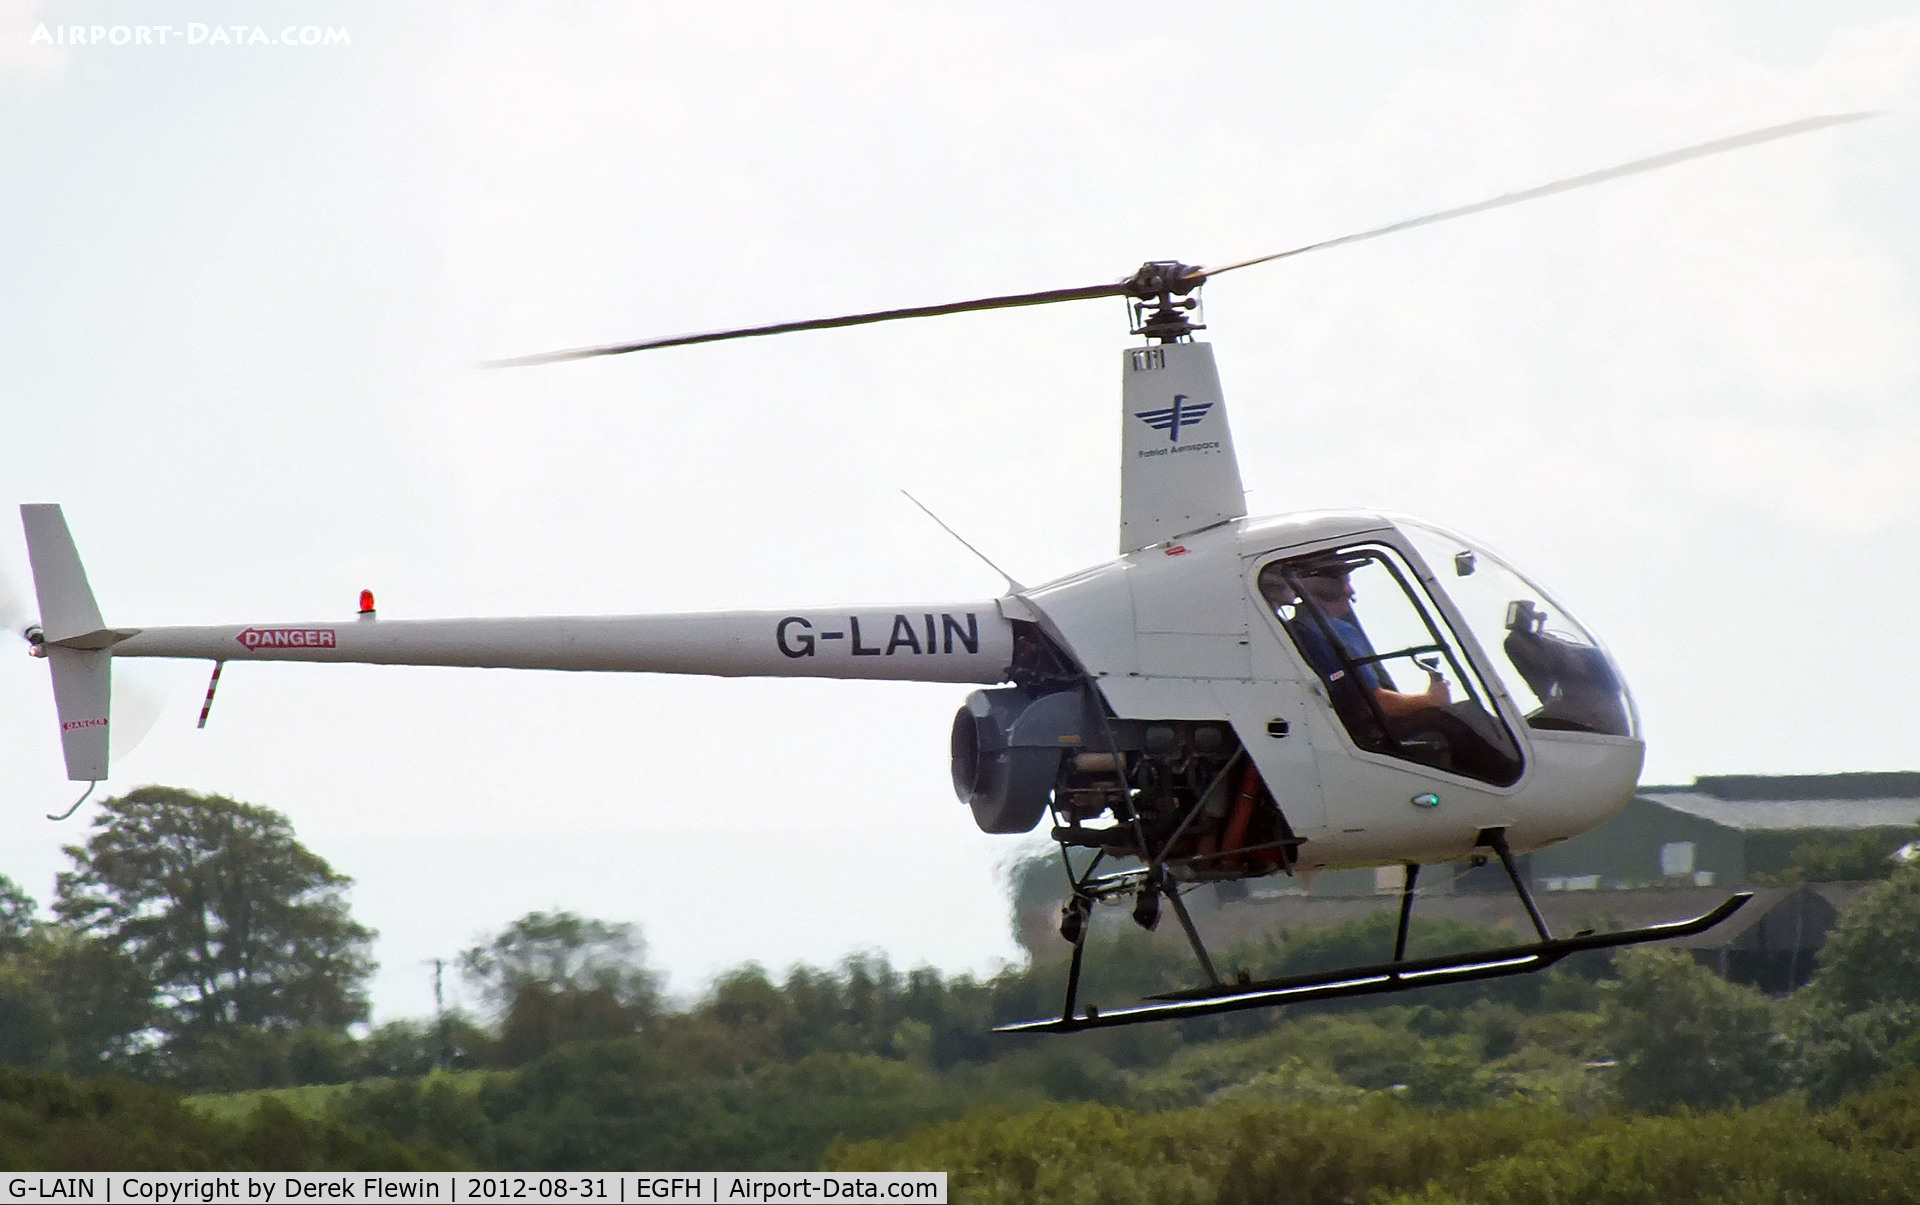 G-LAIN, 1991 Robinson R22 Beta C/N 1992, Seen at EGFH.